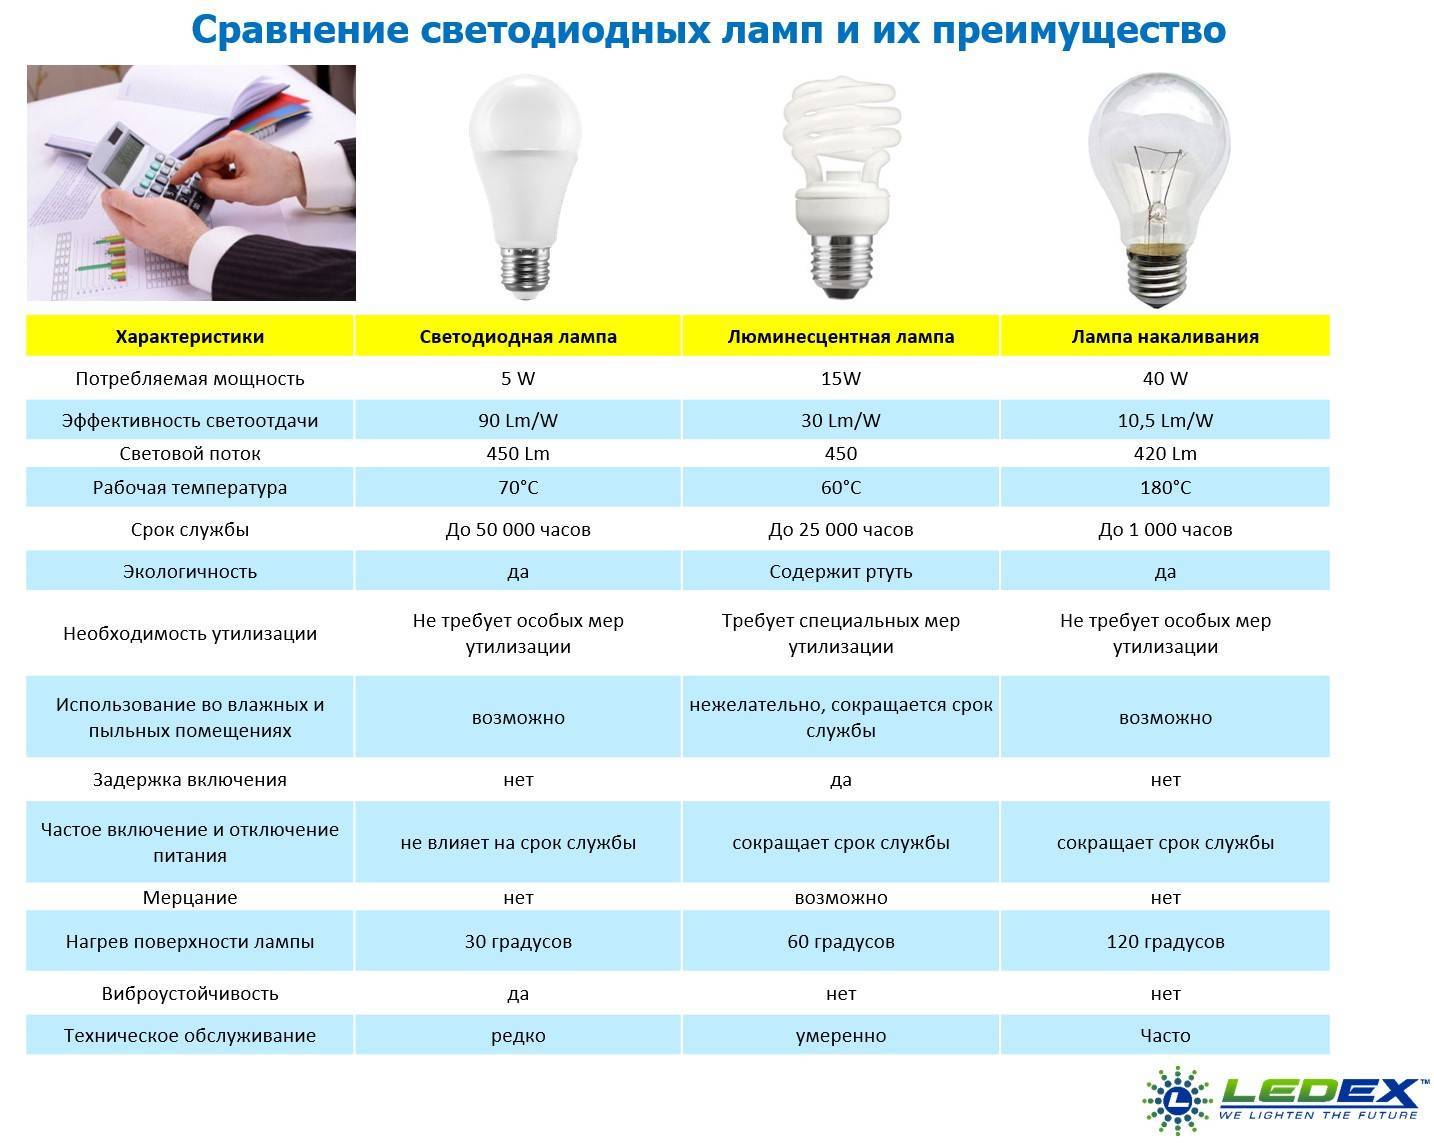 Какие лампы лучше для дома: светодиодные или энергосберегающие